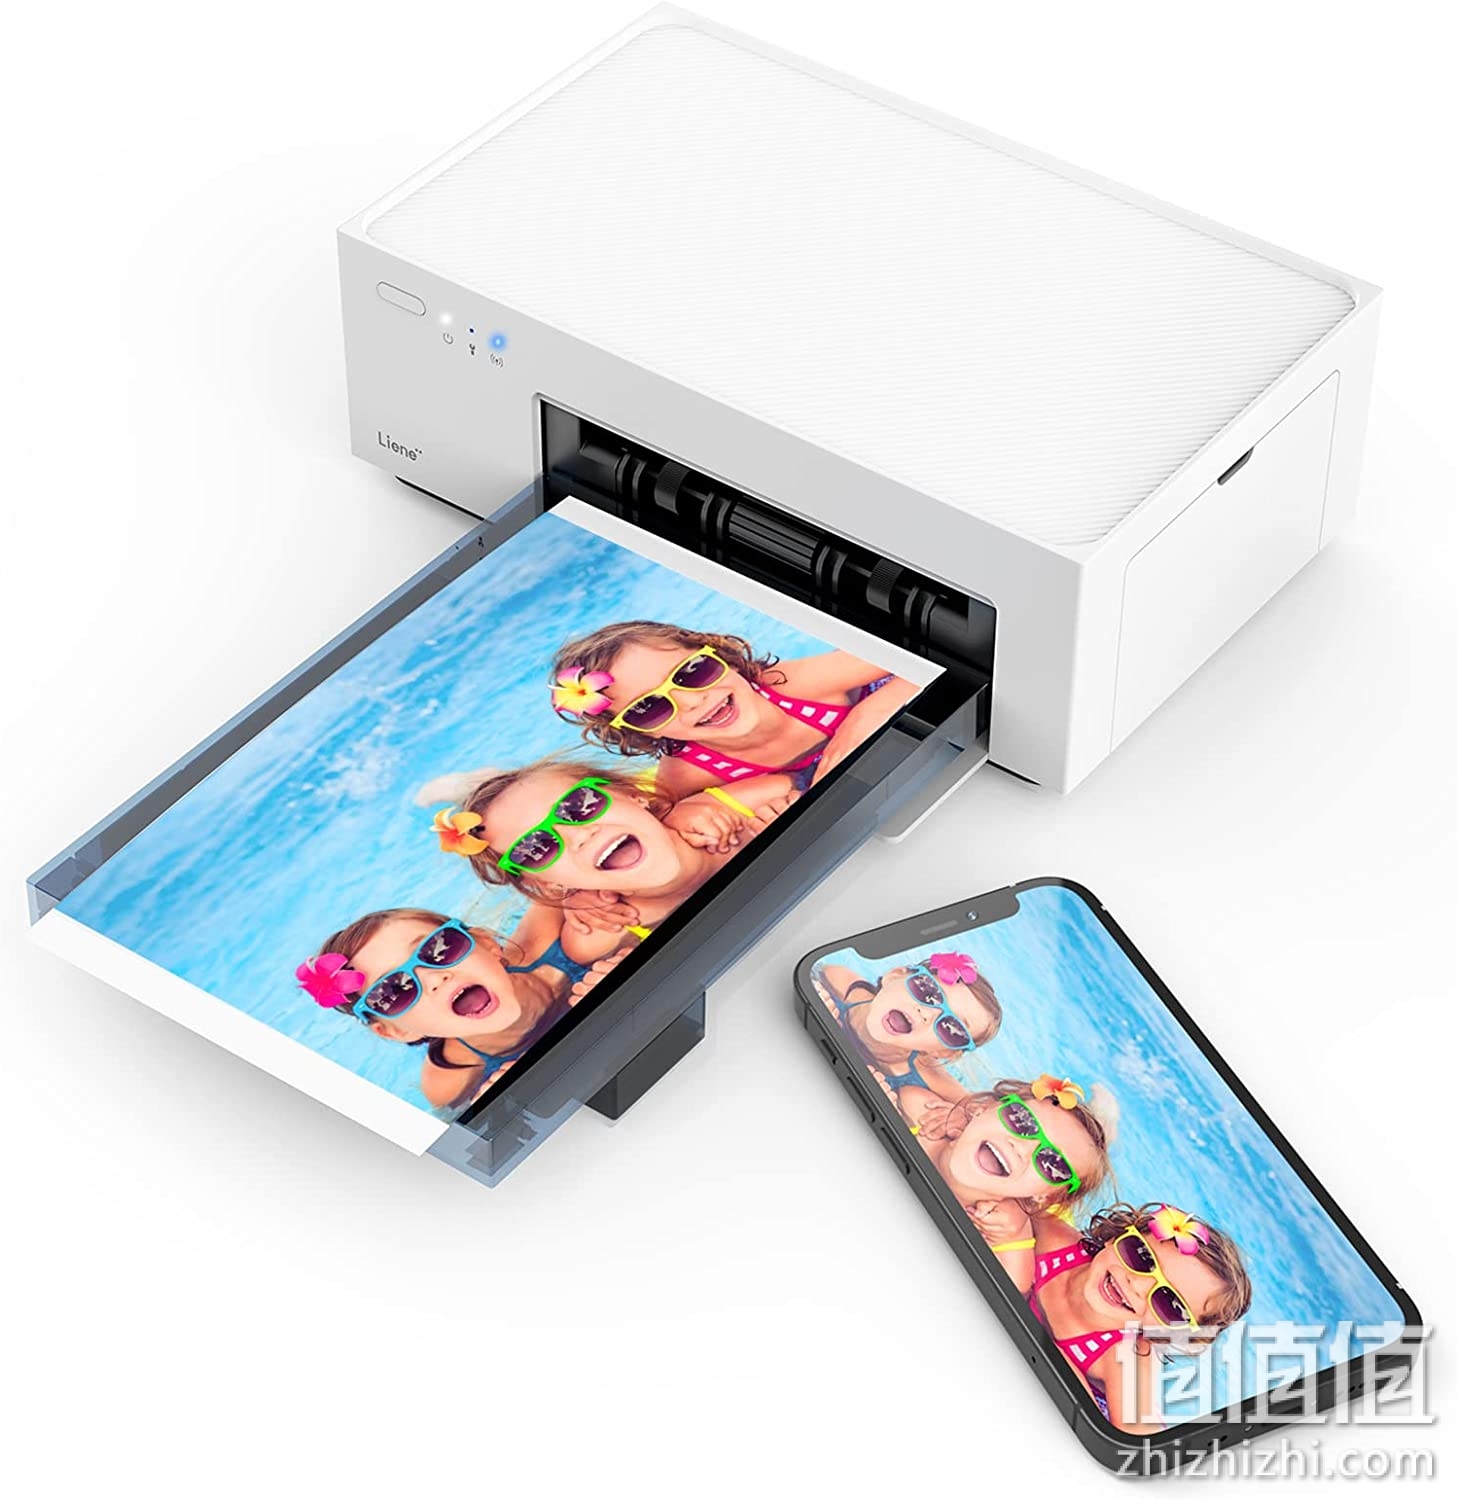 Liene 4x6'' 照片打印机，Wi-Fi 图片打印机，20 张，全彩照片，适用于 iPhone、Android、智能手机、电脑、热染料升华、家用便携式照片打印机